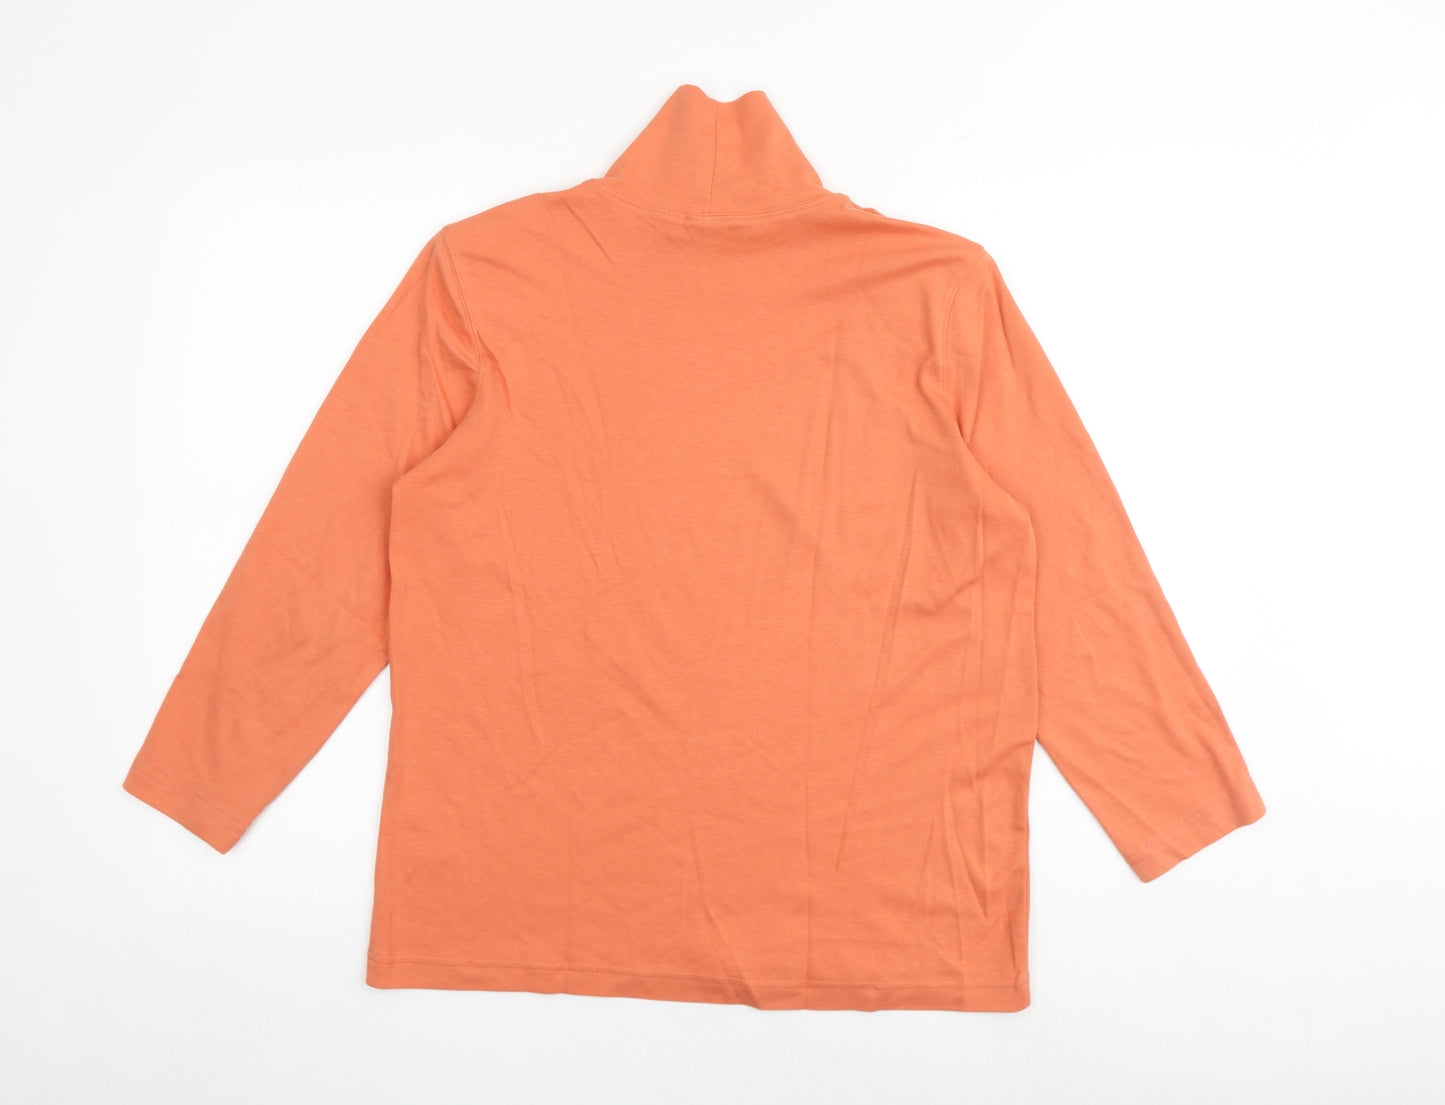 Lands' End Womens Orange 100% Cotton Basic Blouse Size M Roll Neck